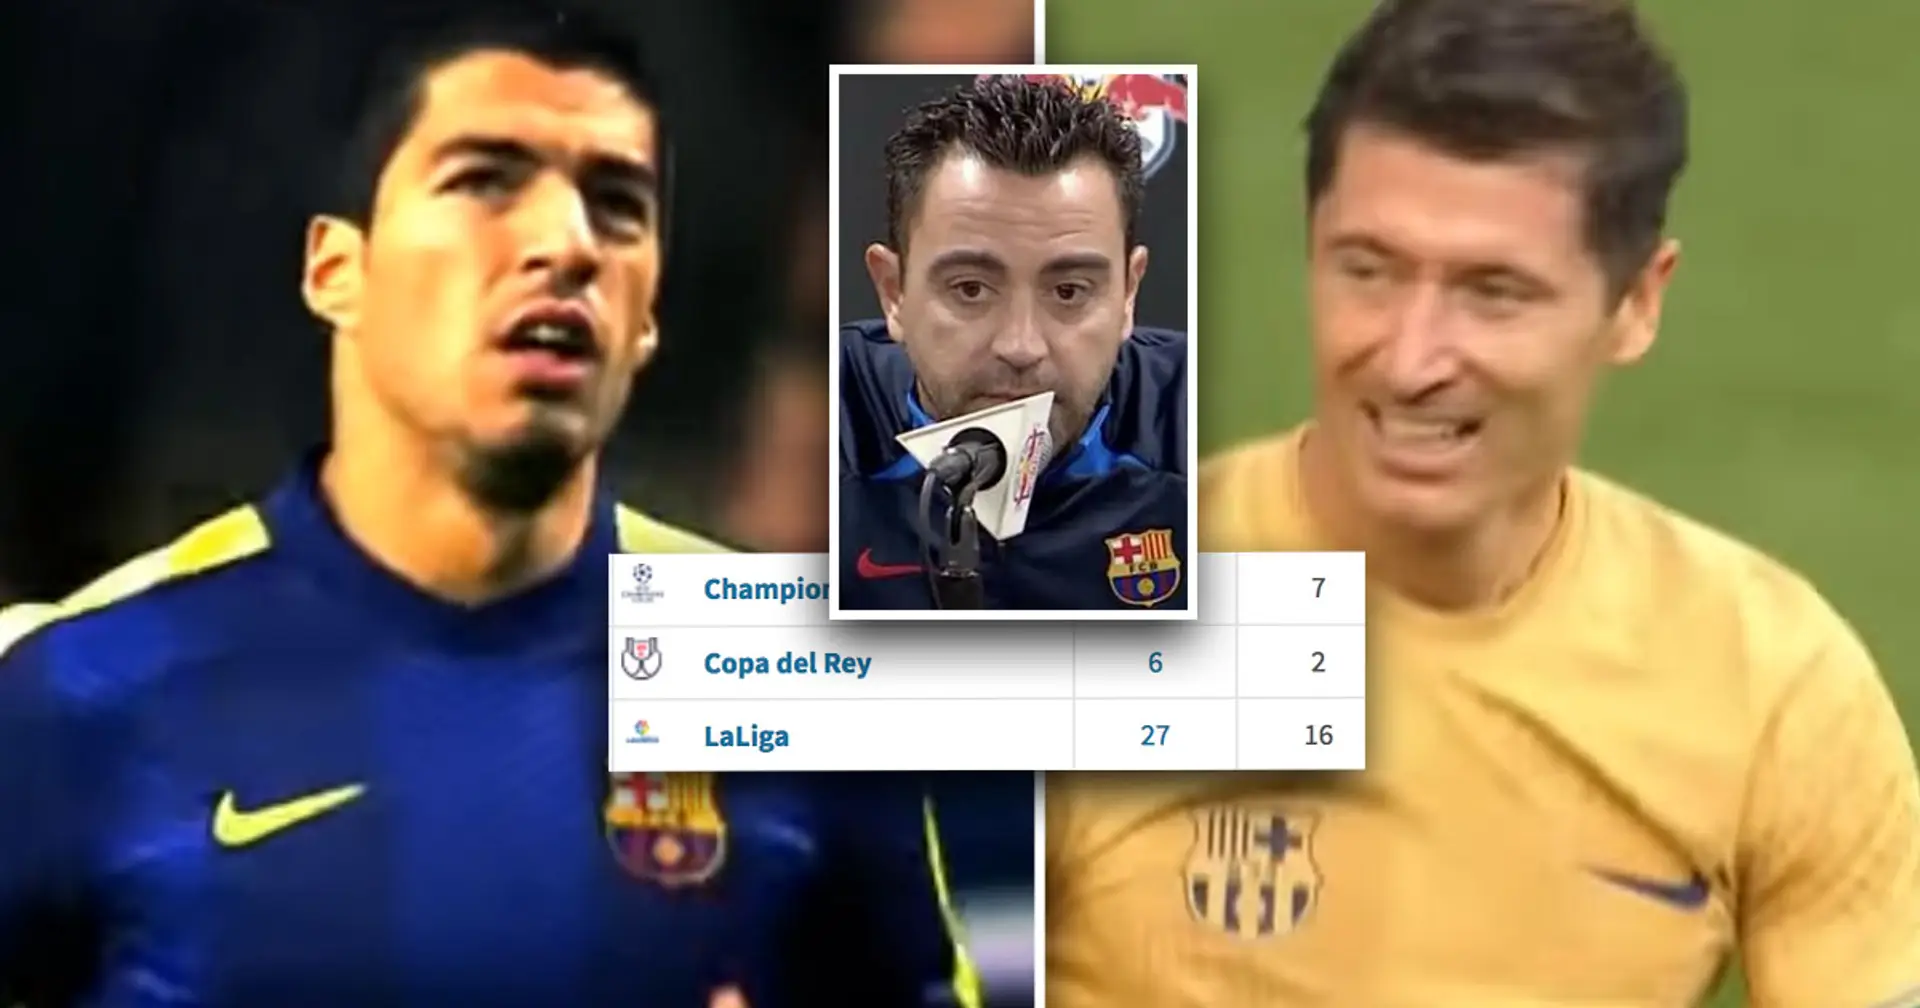 Xavi compares Lewandowski's slow Barca start to Luis Suarez's – does it make sense? Analysed